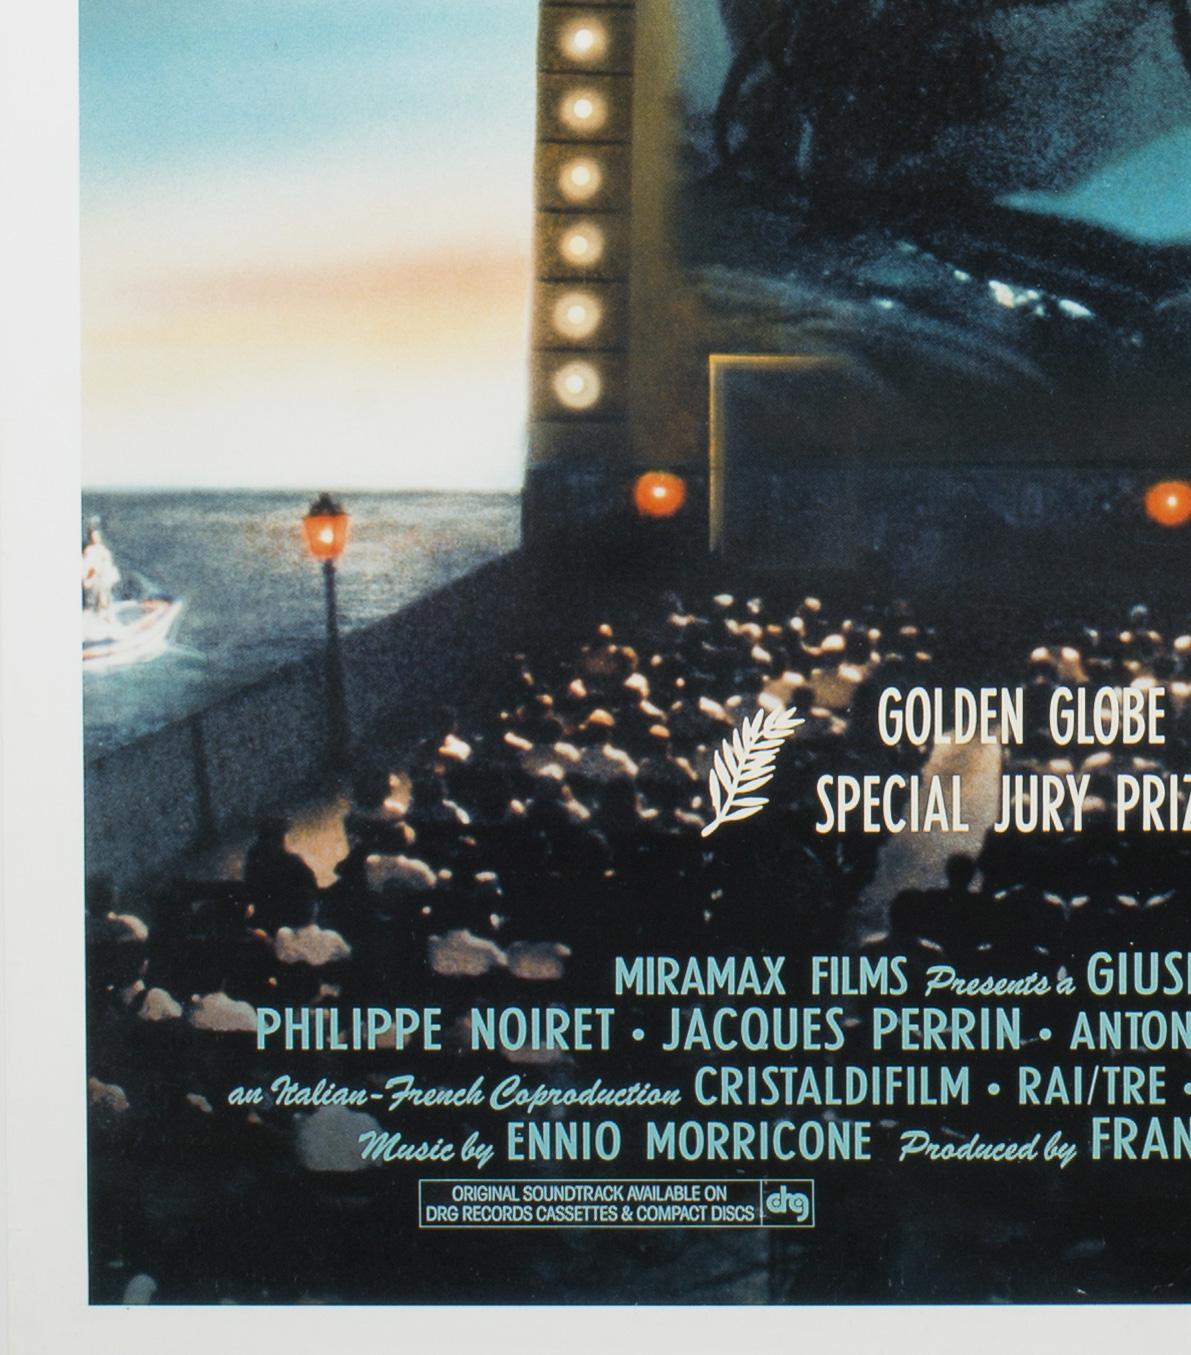 Das umwerfende US-Plakat für Tornatores modernen Klassiker Cinema Paradiso.

Die tatsächliche Postergröße beträgt 26 5/8 x 40 Zoll. Gerollt. Fast neuwertig/neuwertig.